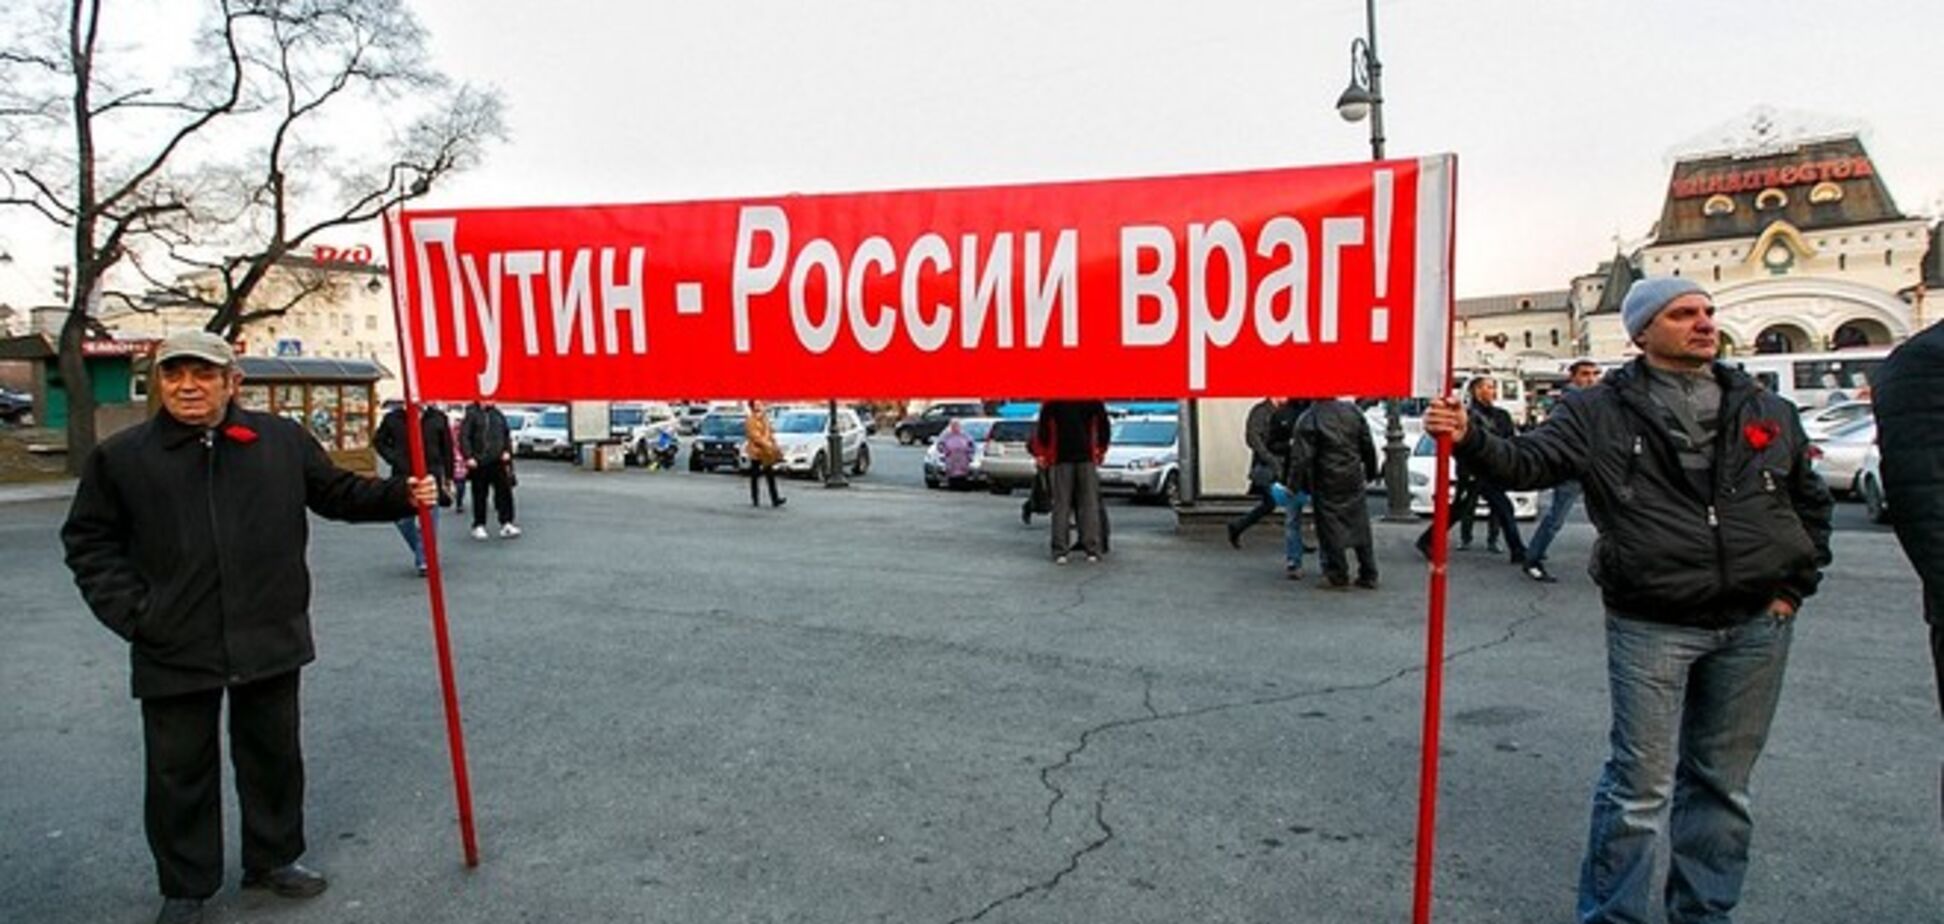 Бунт на корабле: коммунисты Владивостока вышли на митинг с плакатами 'Путин – враг России!'